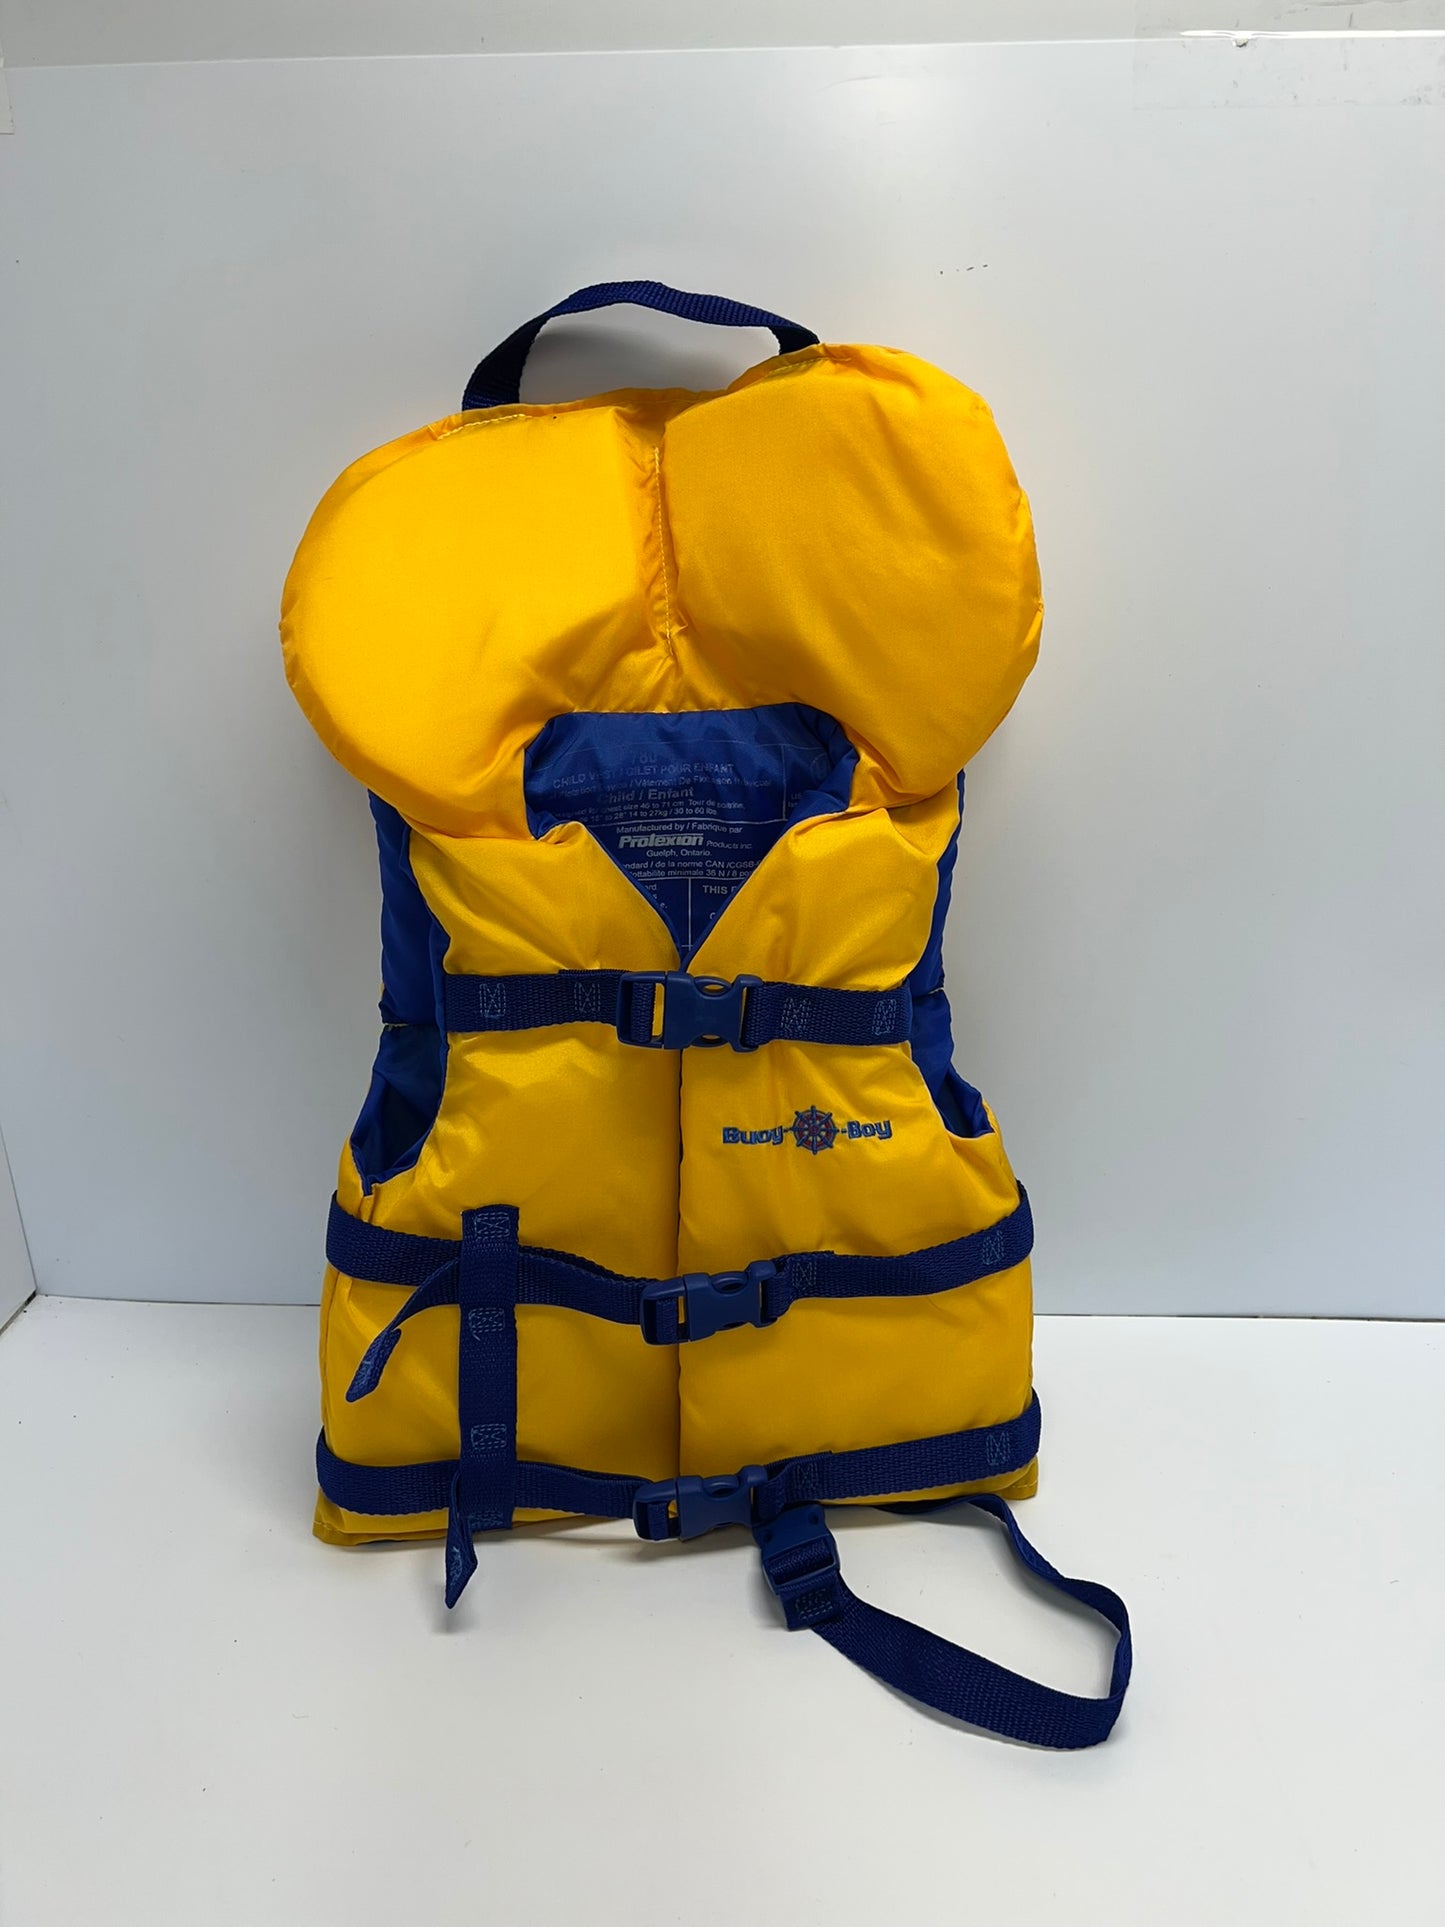 Life Jacket Child Size 30-60 lb Buoy o Boy Yellow Blue Like New